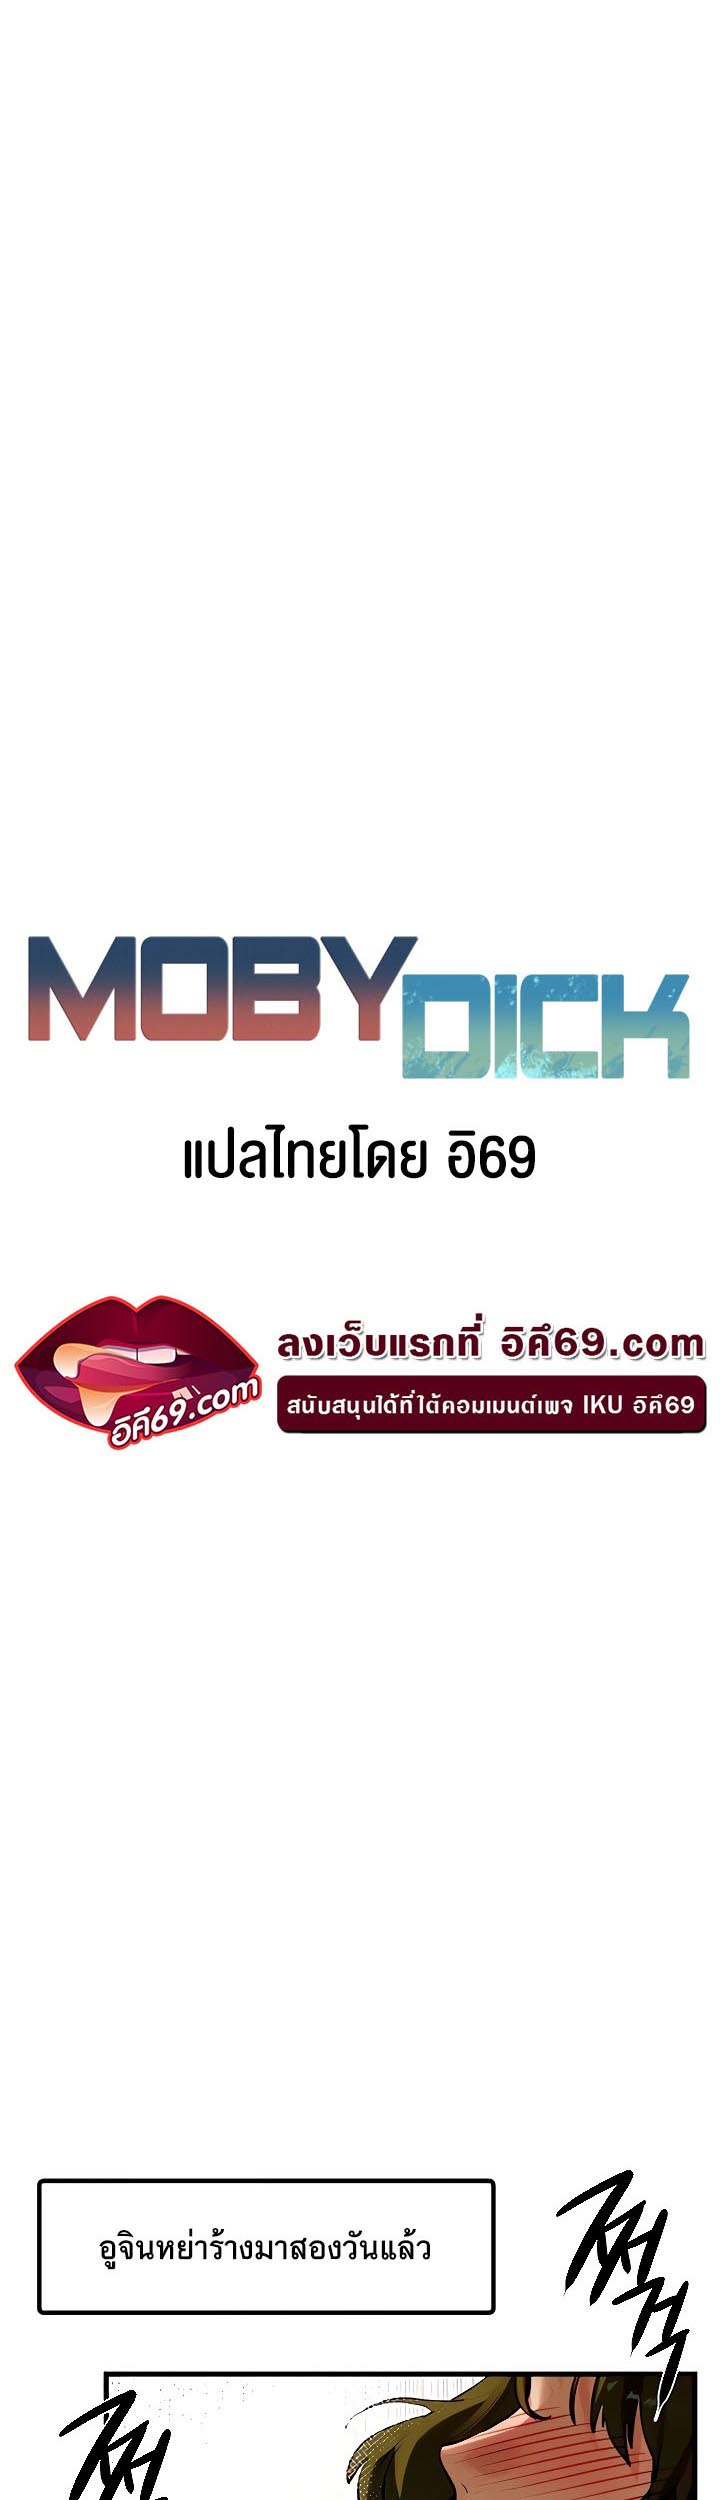 อ่านโดจิน เรื่อง Moby Dick โมบี้ดิ๊ก 7 06